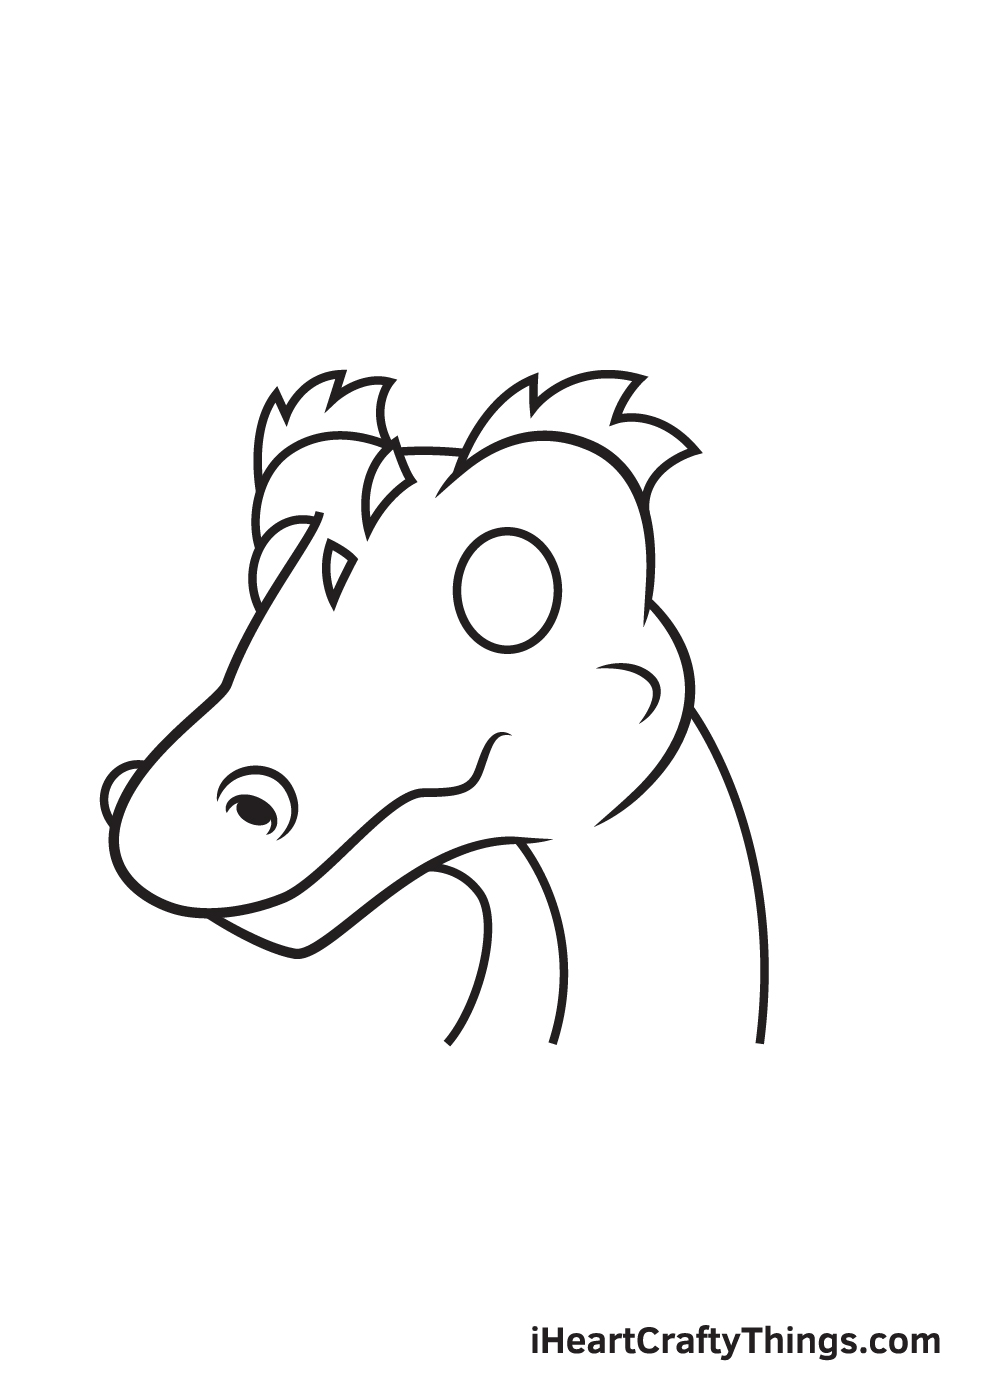 Dragon Head DRAWING – STEP 6 - Hướng dẫn cách vẽ đầu rồng đơn giản đẹp với 9 bước